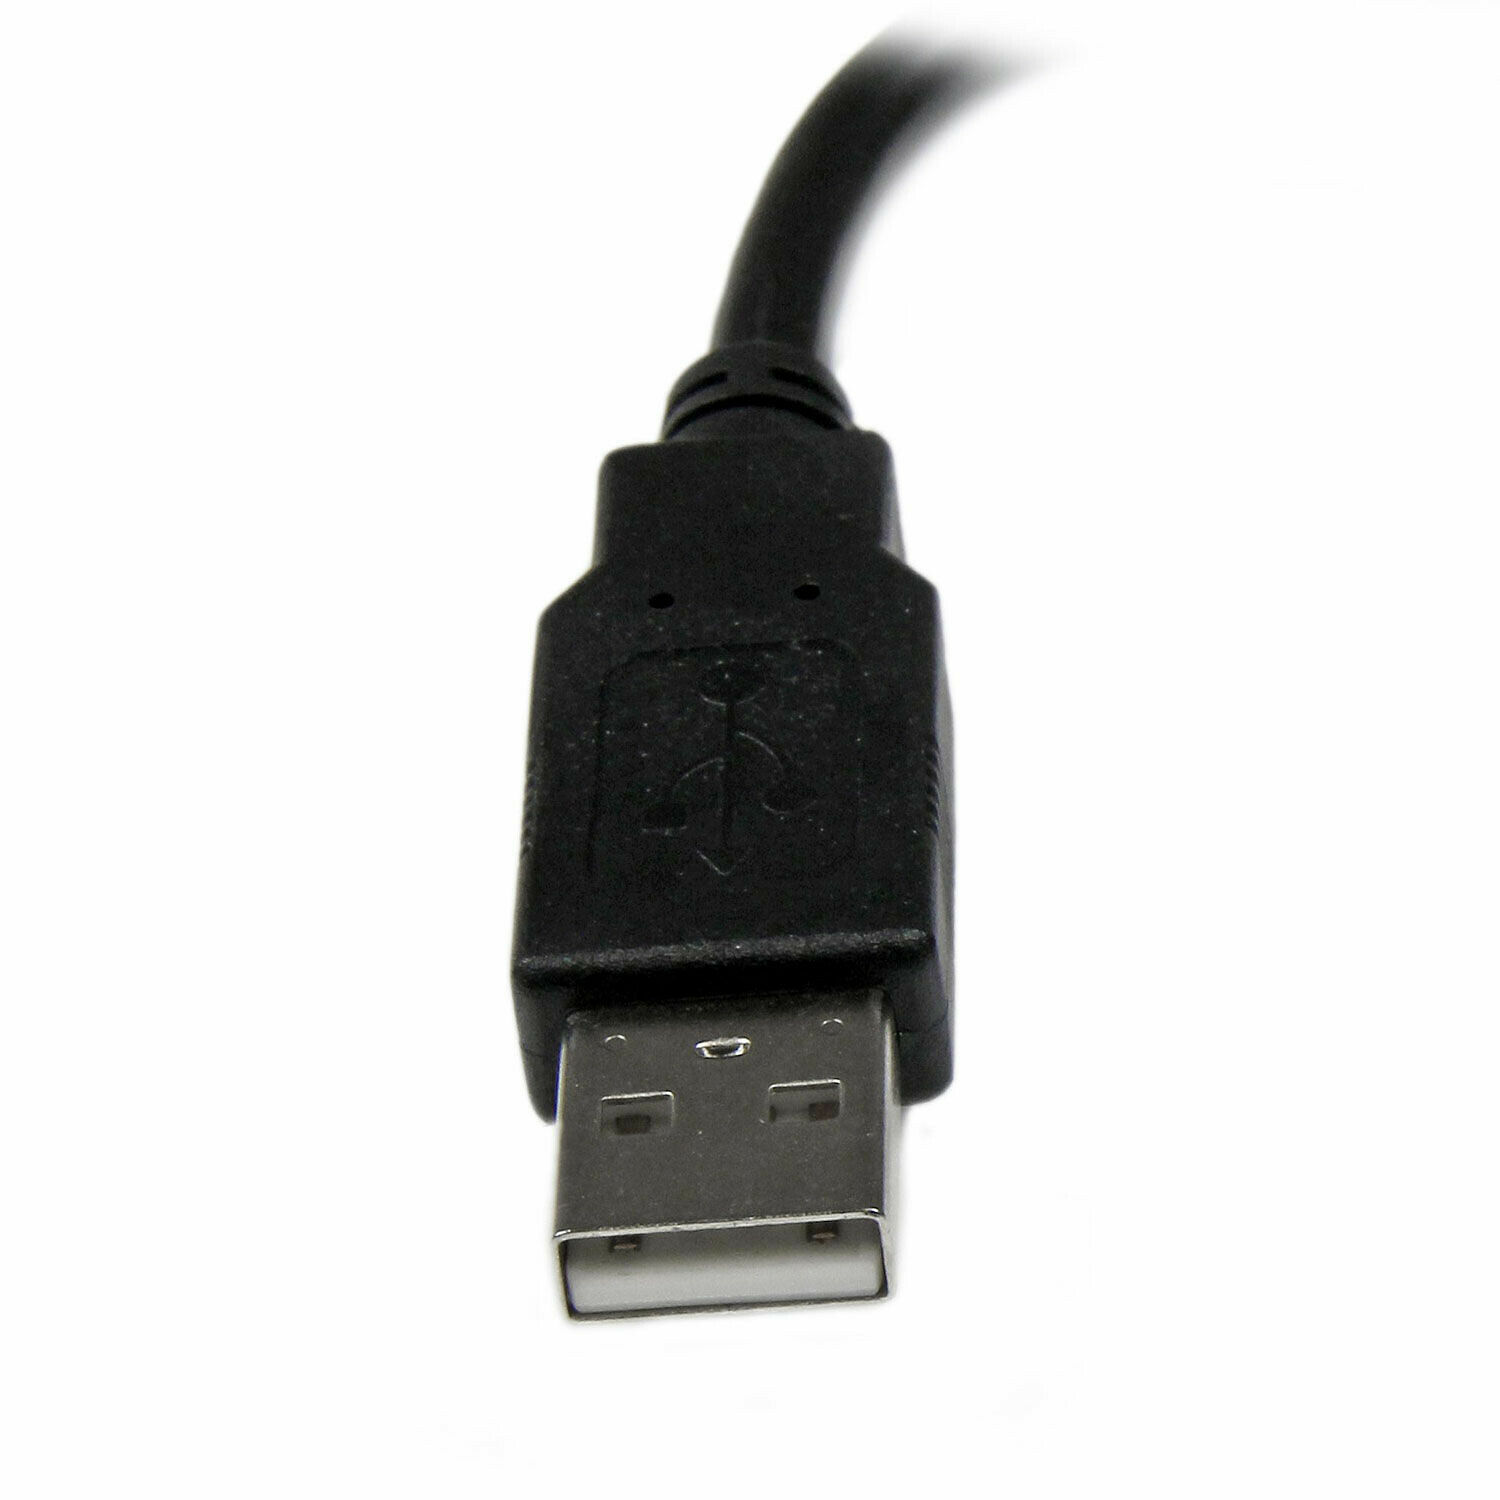 Rallonge USB 3.0 Type A sur socle - 1.5 mètre - Startech - Câble